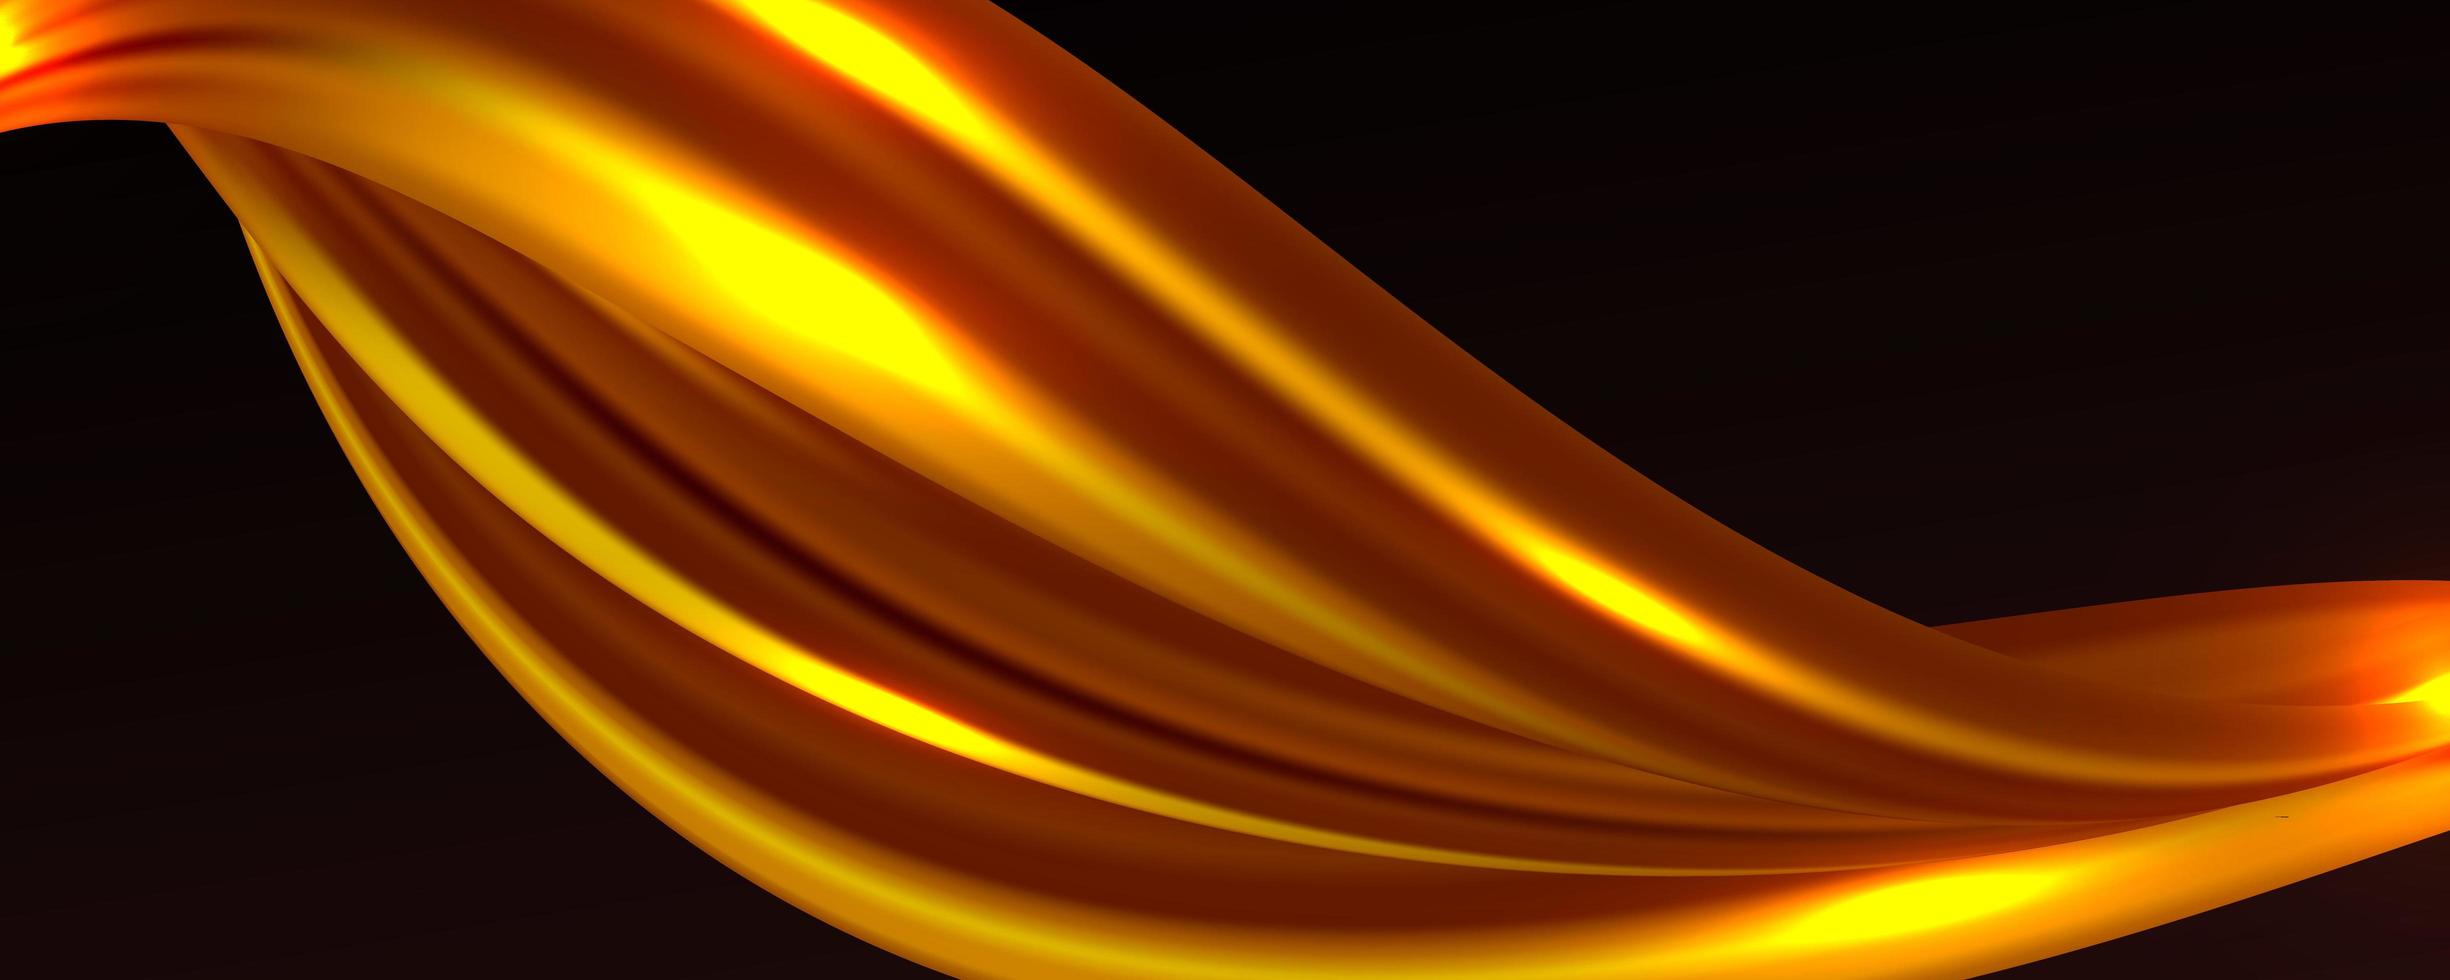 abstrakter Hintergrund des goldenen Seidengewebes vektor